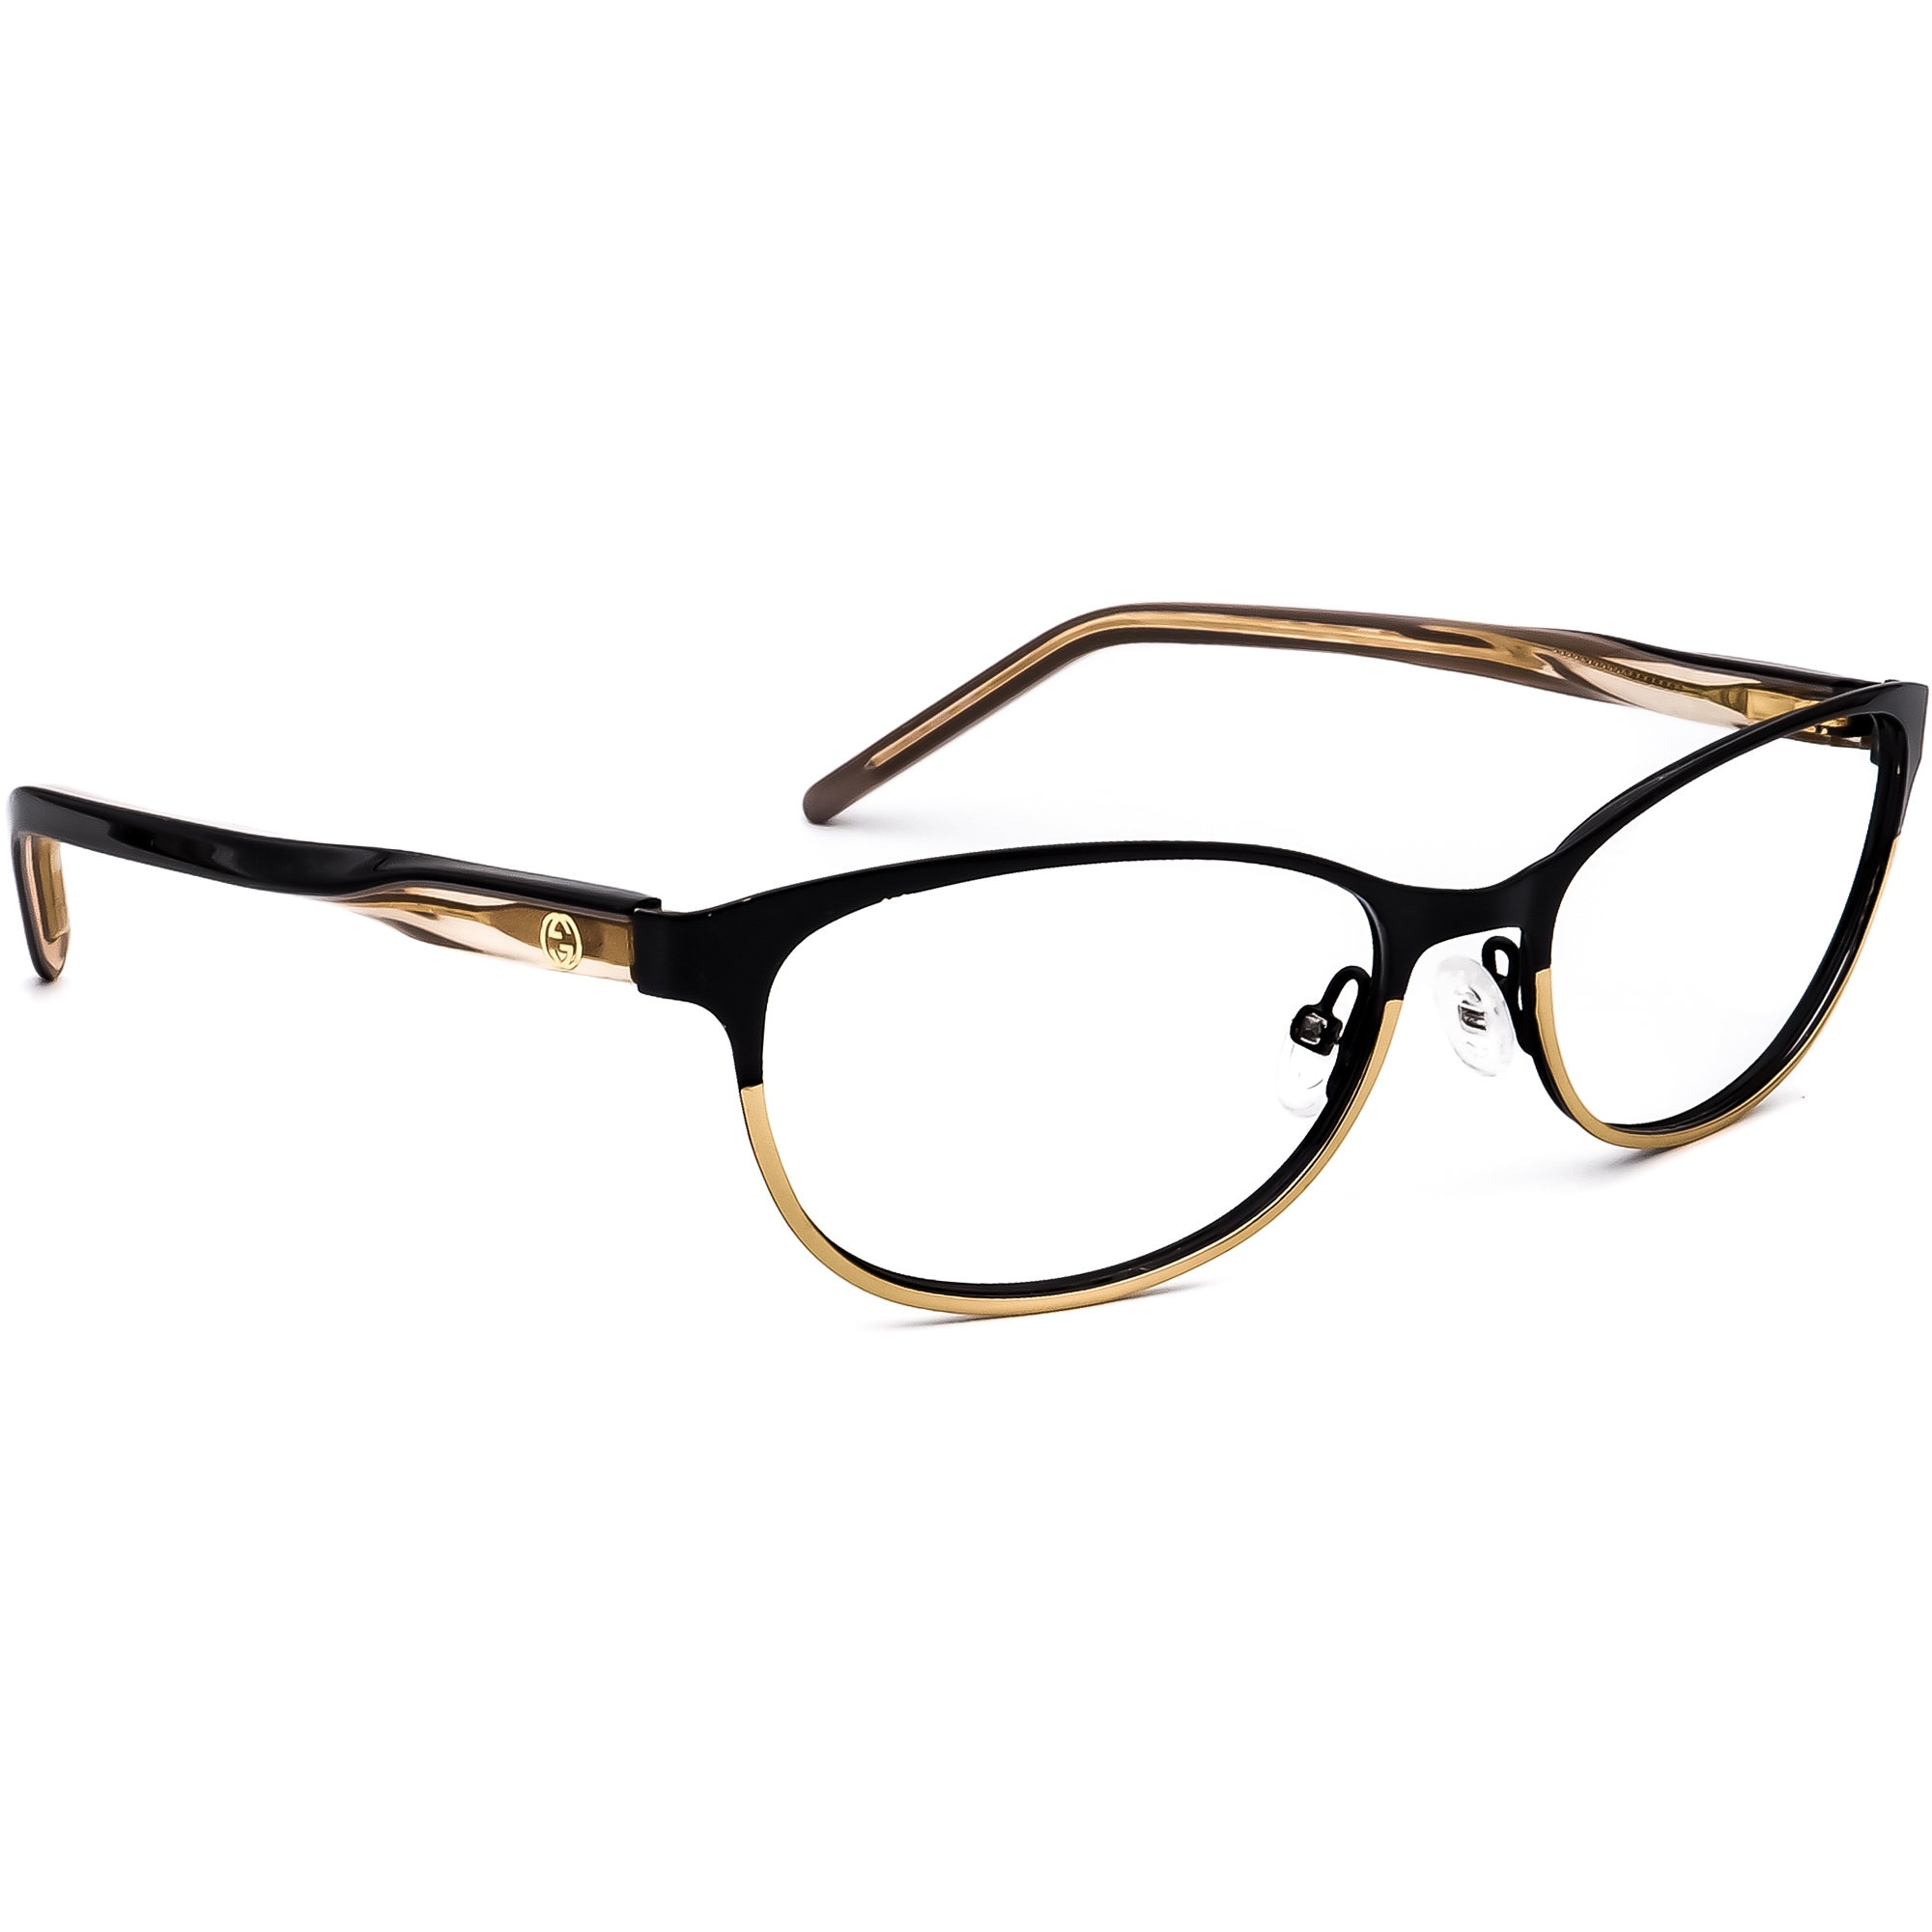 louis vuitton eyeglasses frames for sale